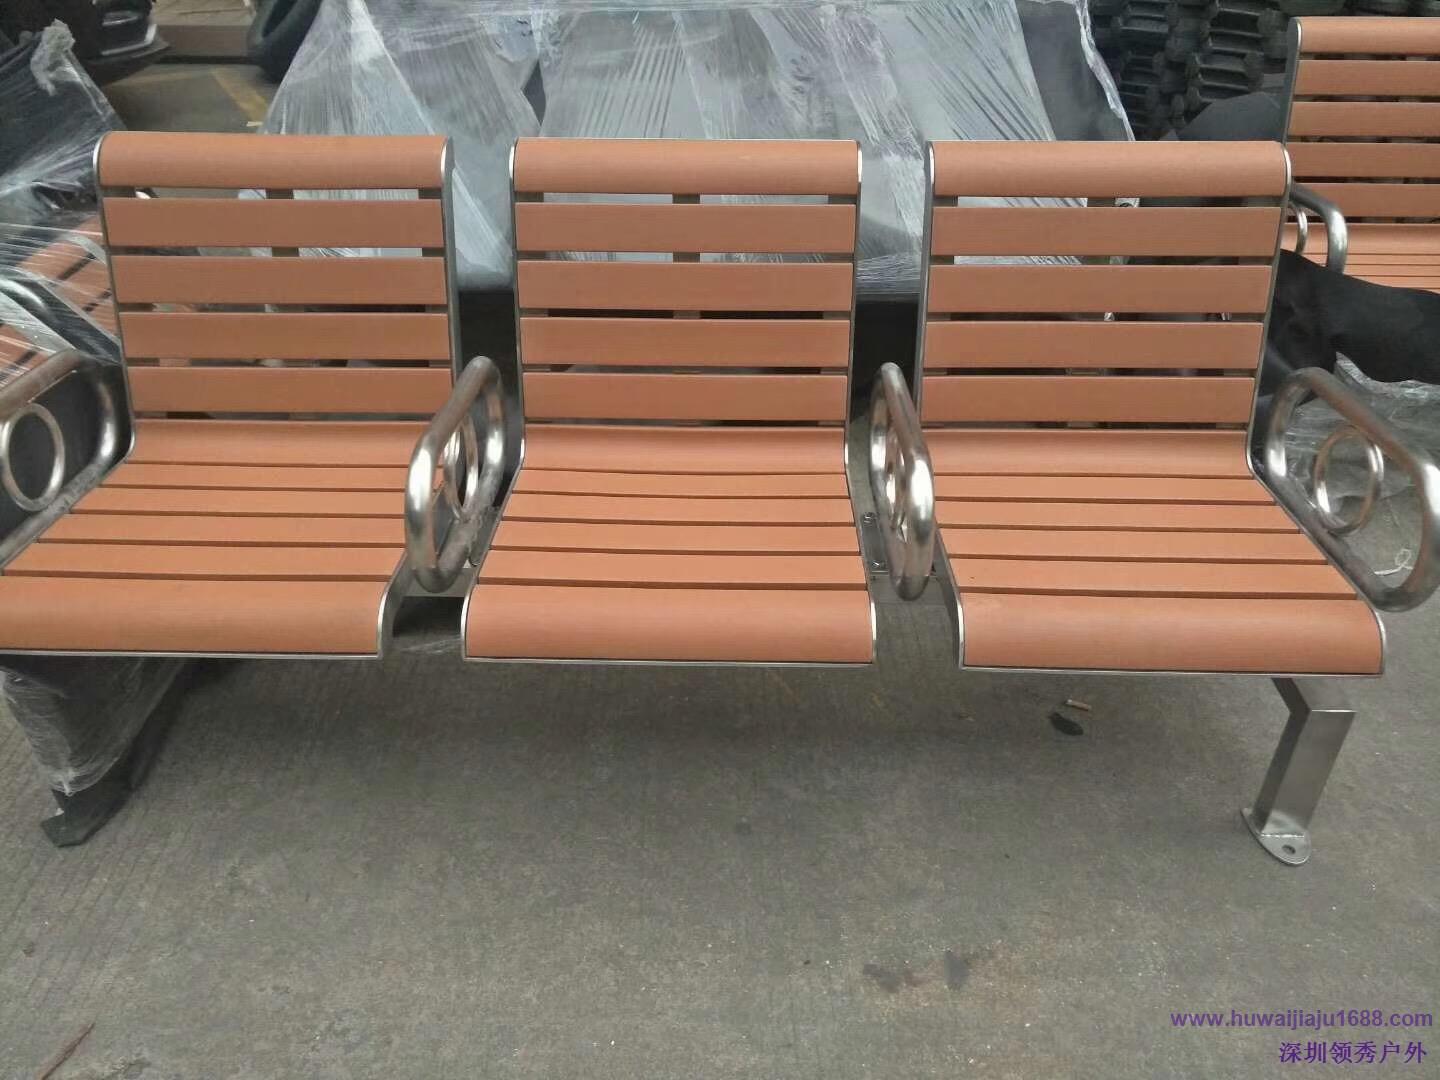 常规铸铝塑木户外休闲椅.jpeg